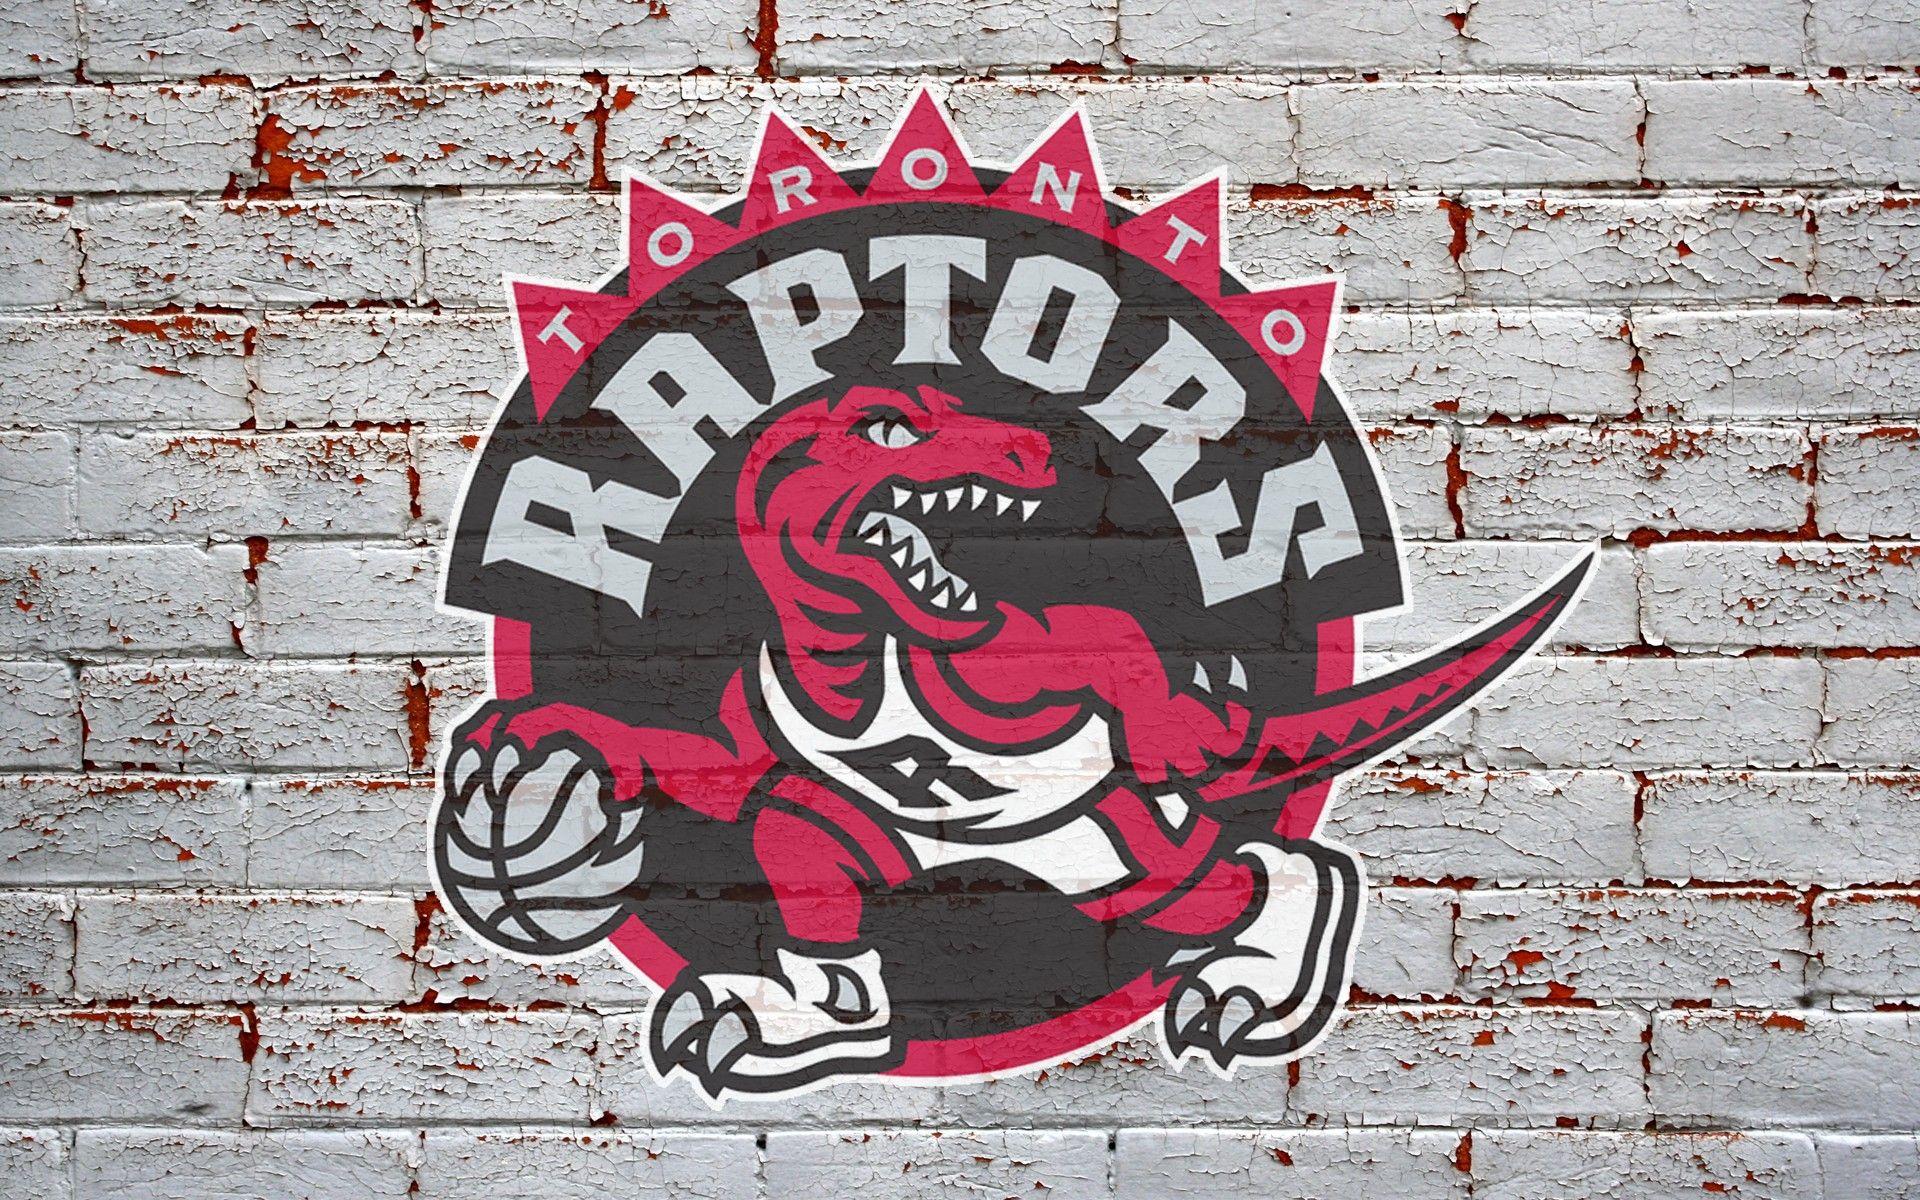 Toronto Raptors wallpaper. Raptors wallpaper, Toronto raptors